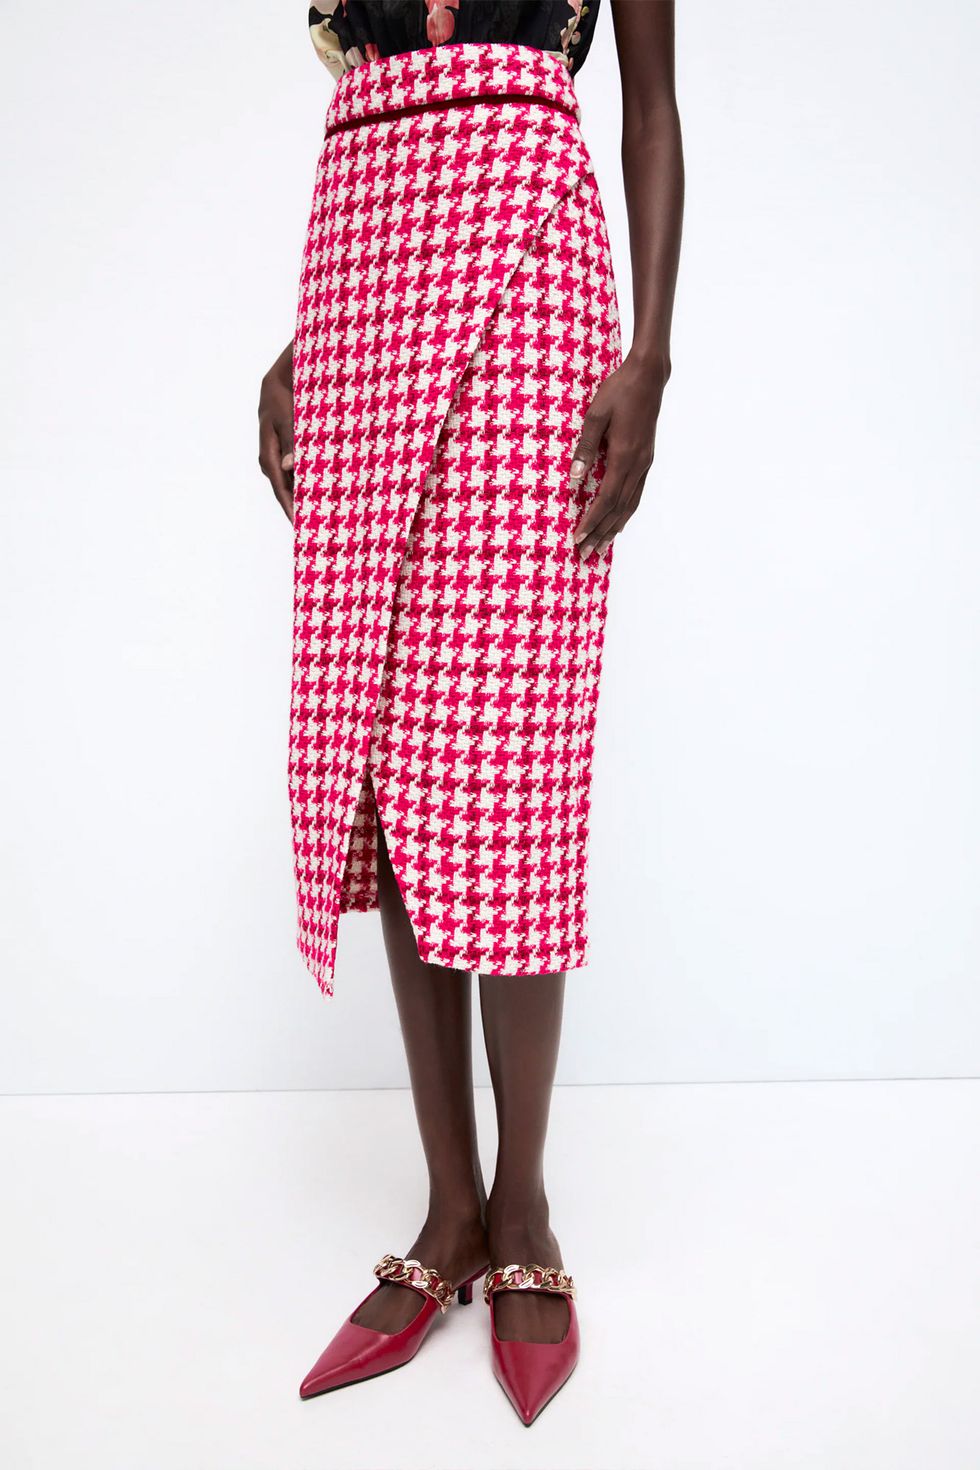 Este dos piezas de sobrecamisa y falda de tweed Zara es ideal